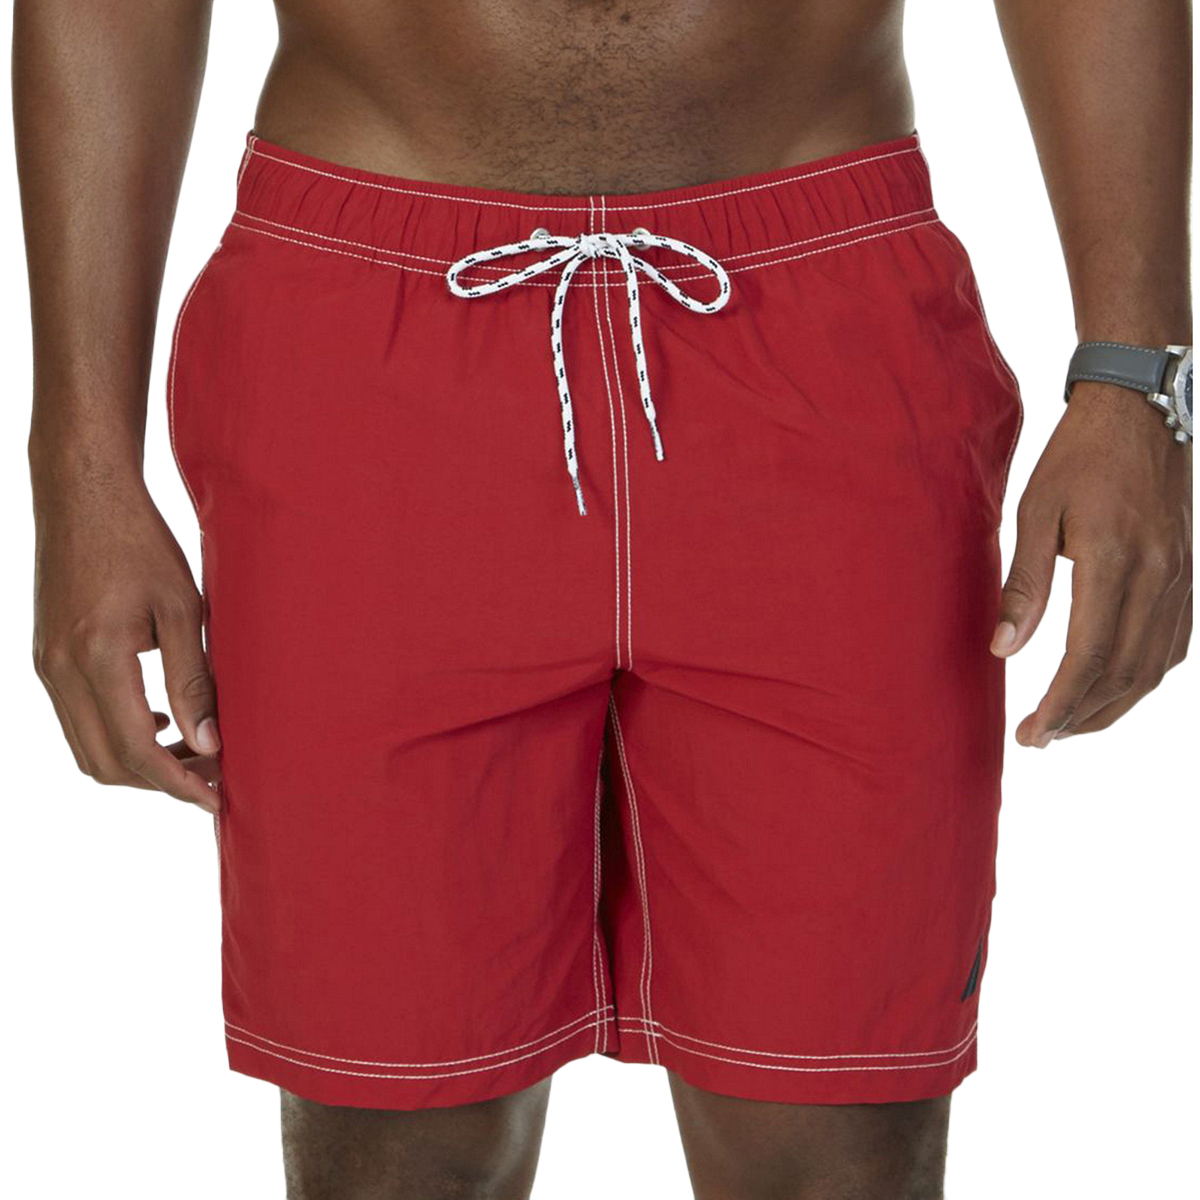 Nautica Men's Quick-Dry Signature Swim Trunks - Red, XL